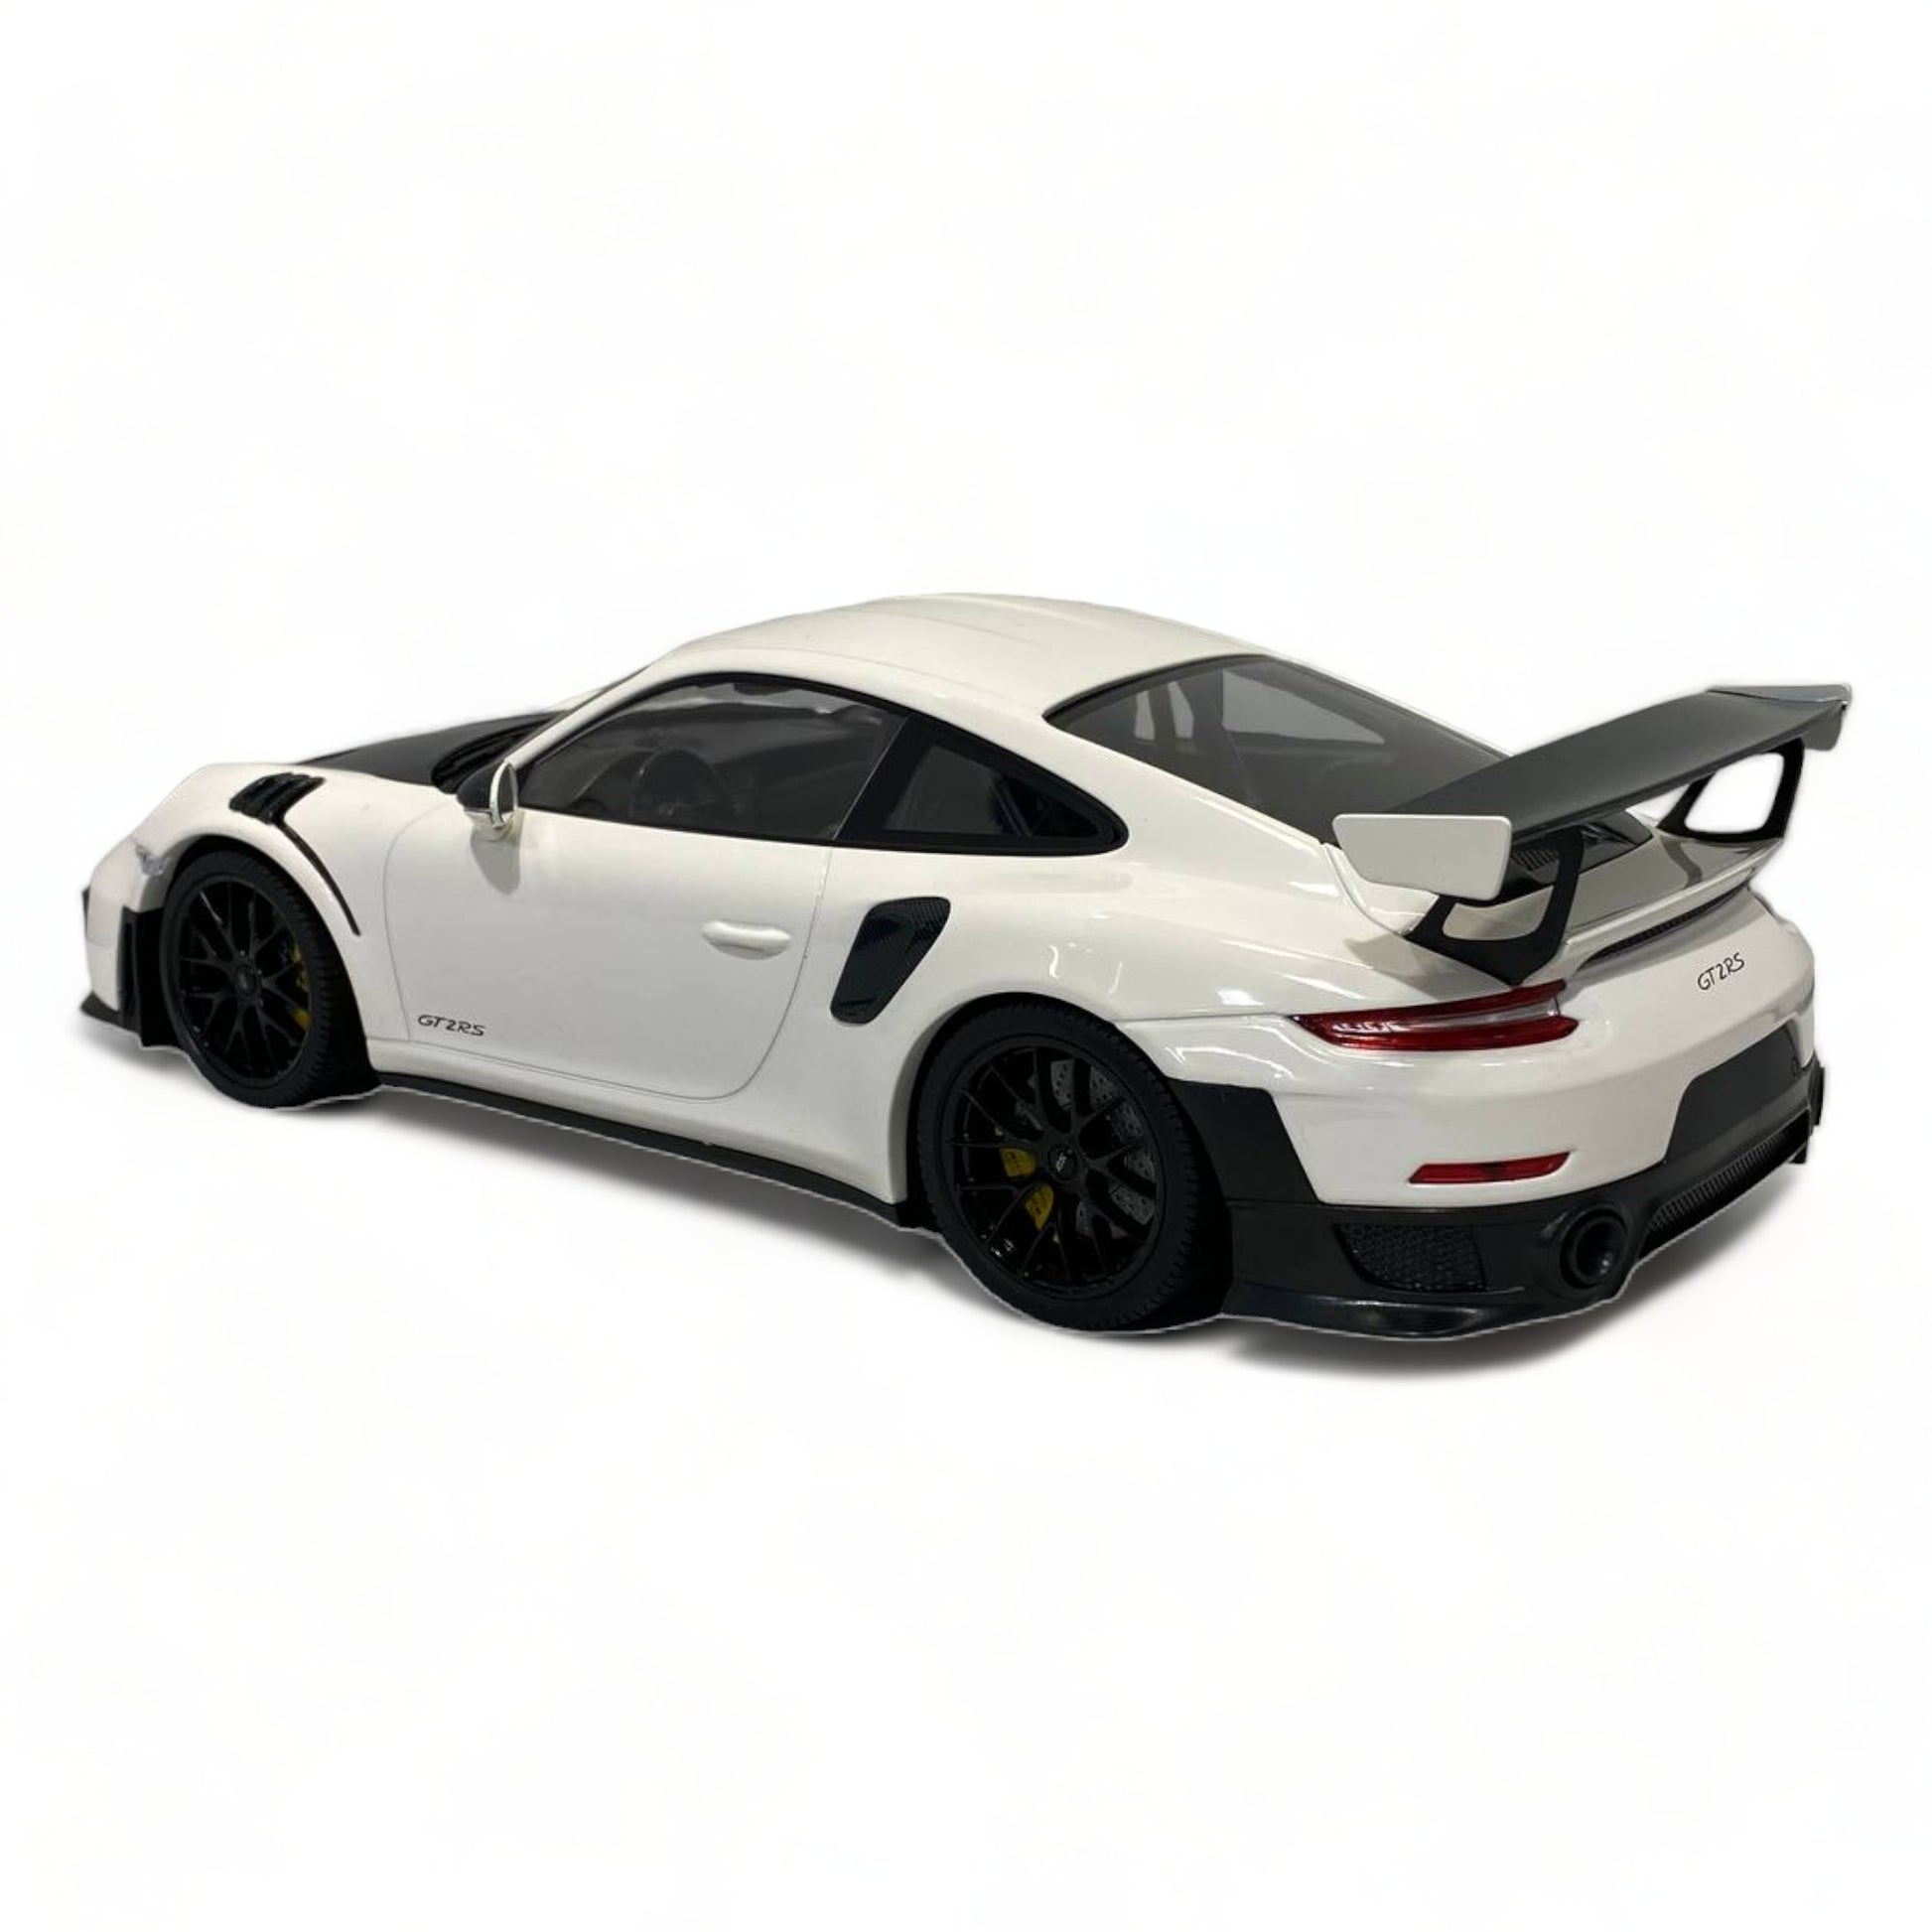 1/18 Minichamps Porsche 911 GT2 RS - White 2018 Model Car|Sold in Dturman.com Dubai UAE.